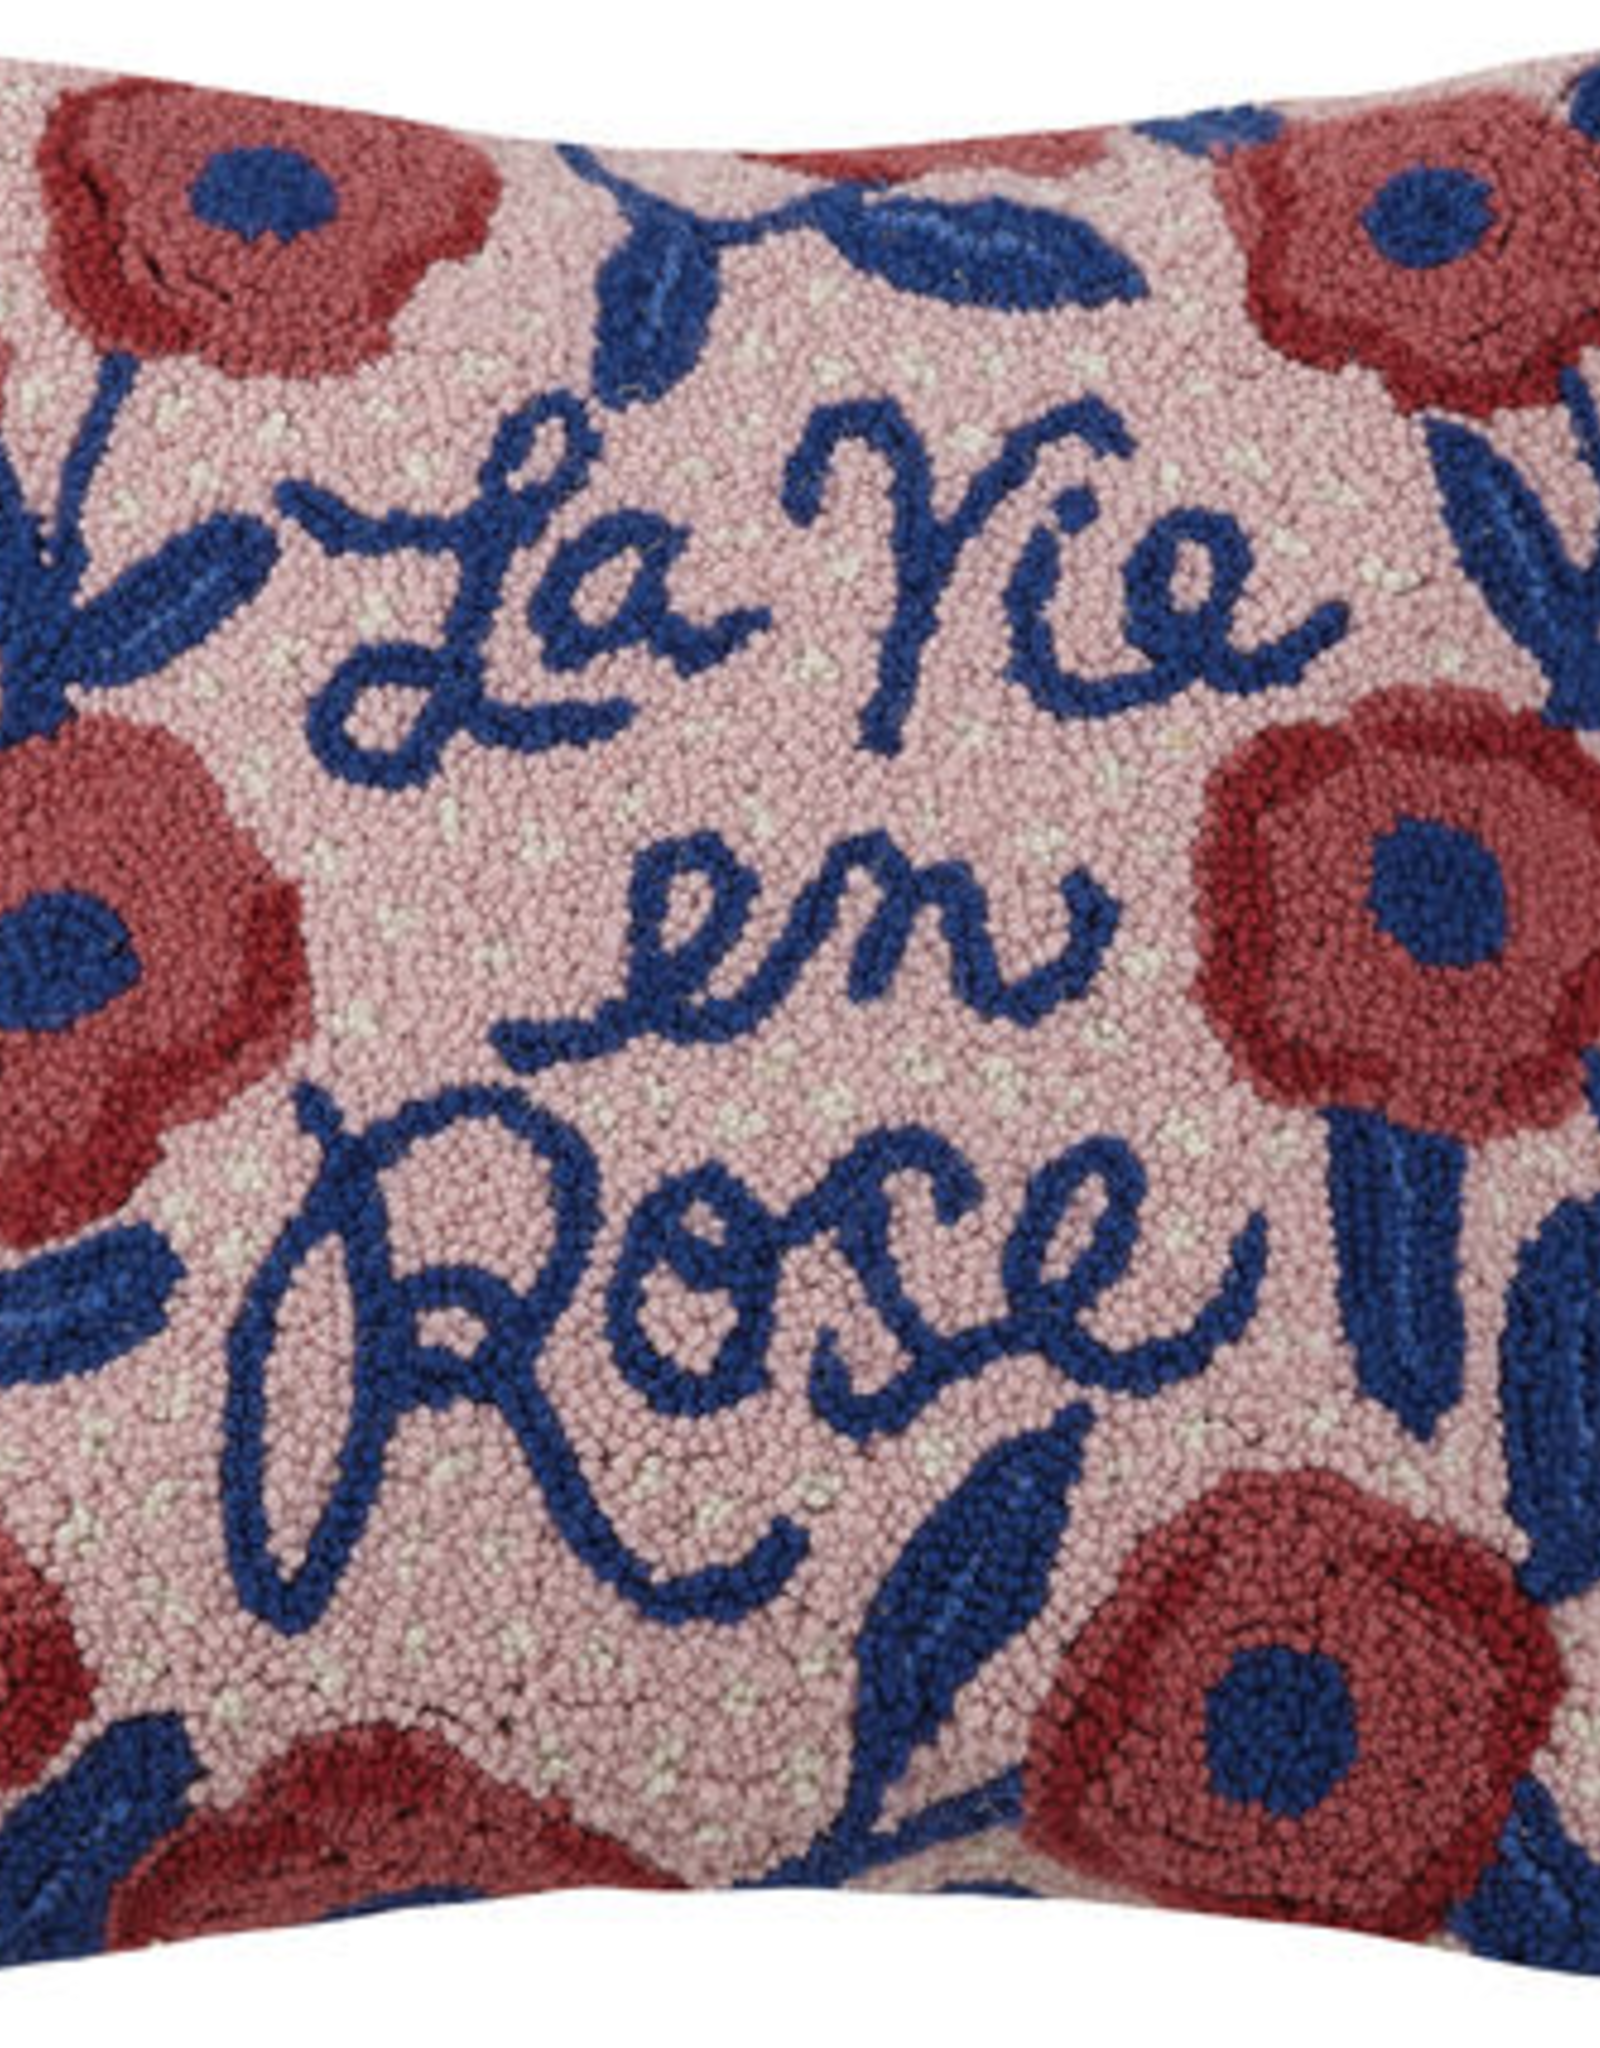 La Vie en Rose w/flowers Hook Pillow - 16" x 16"